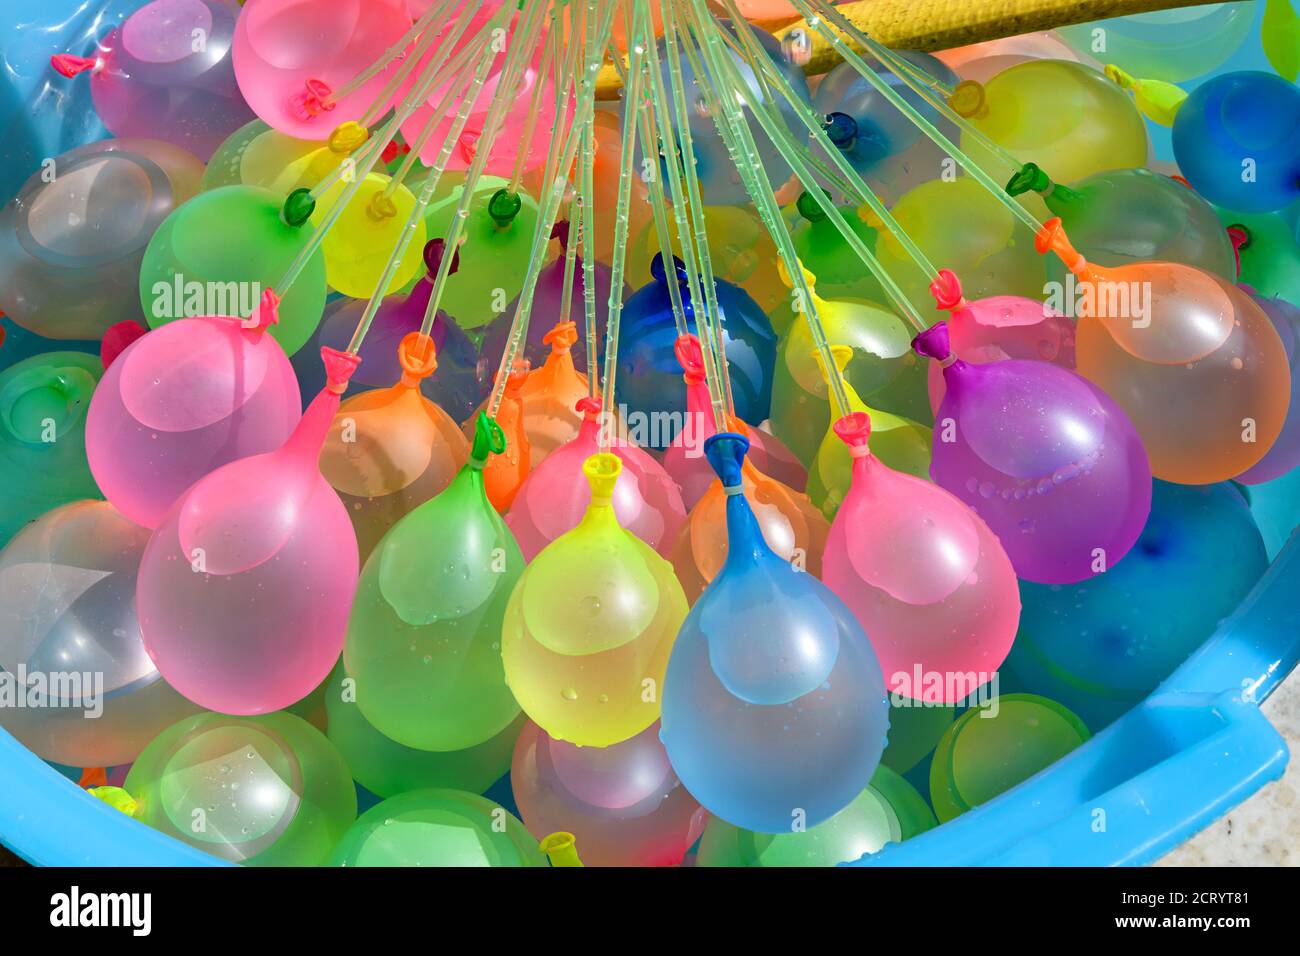 Remplir d'eau une baignoire remplie de ballons en caoutchouc colorés pour une utilisation comme bombes à eau pour refroidir en été lors d'une fête ou d'un carnaval Banque D'Images